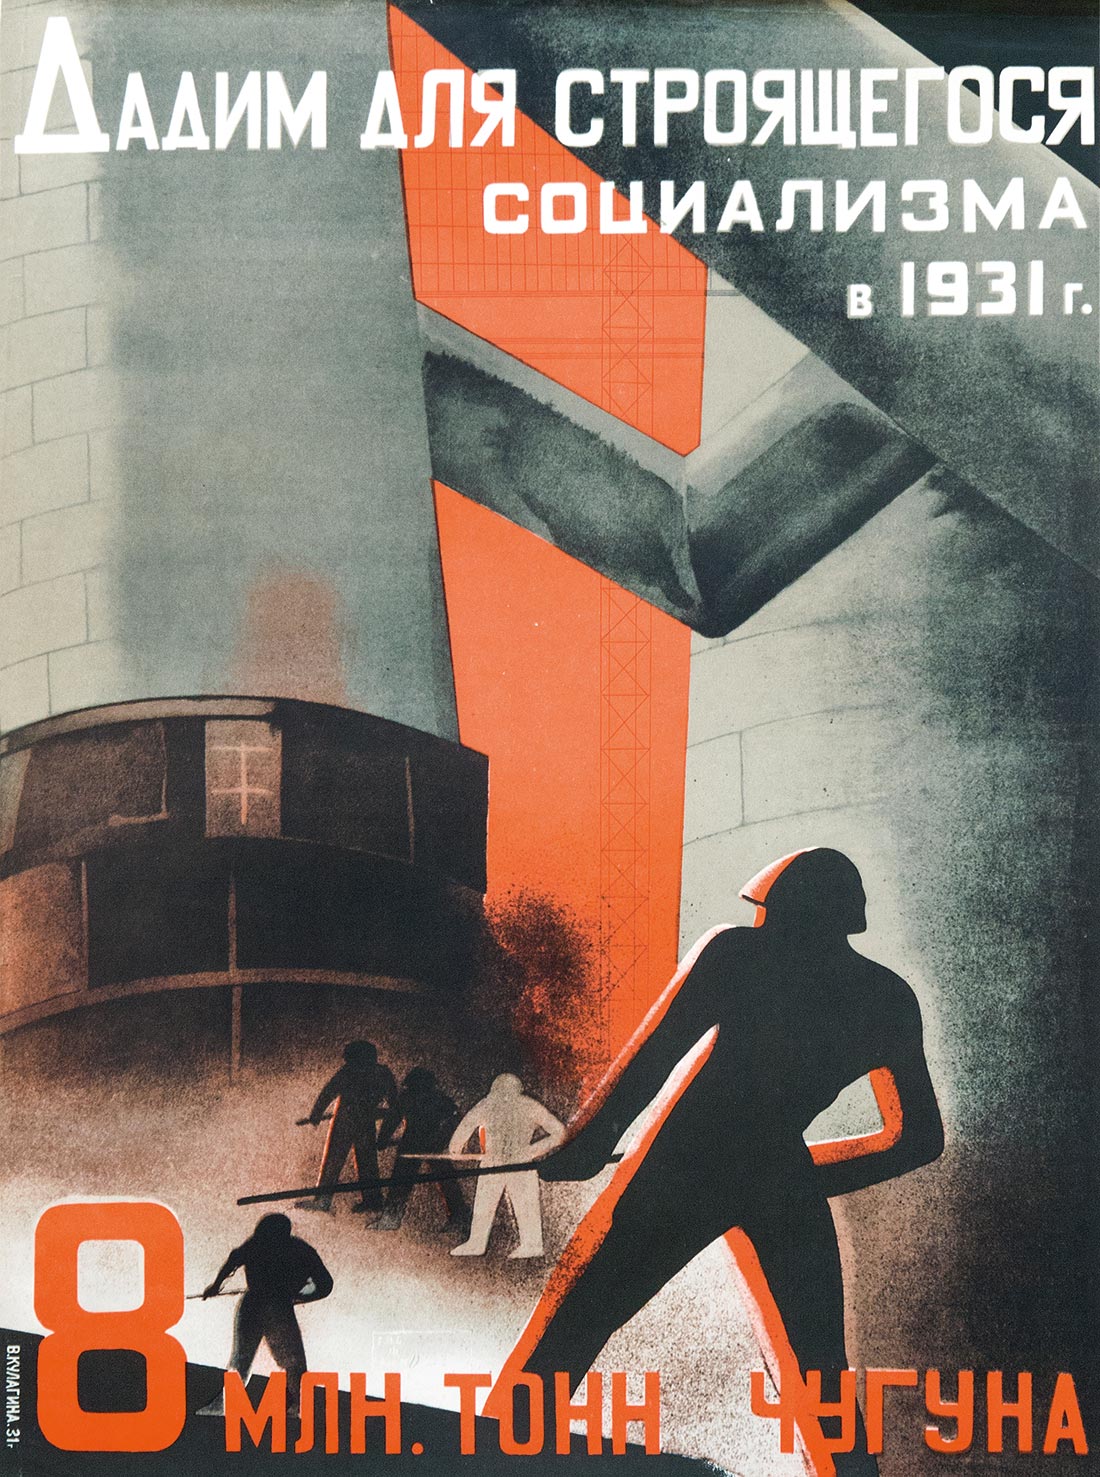 Дадим для строящегося социализма в 1931 году 8 млн тонн чугуна!